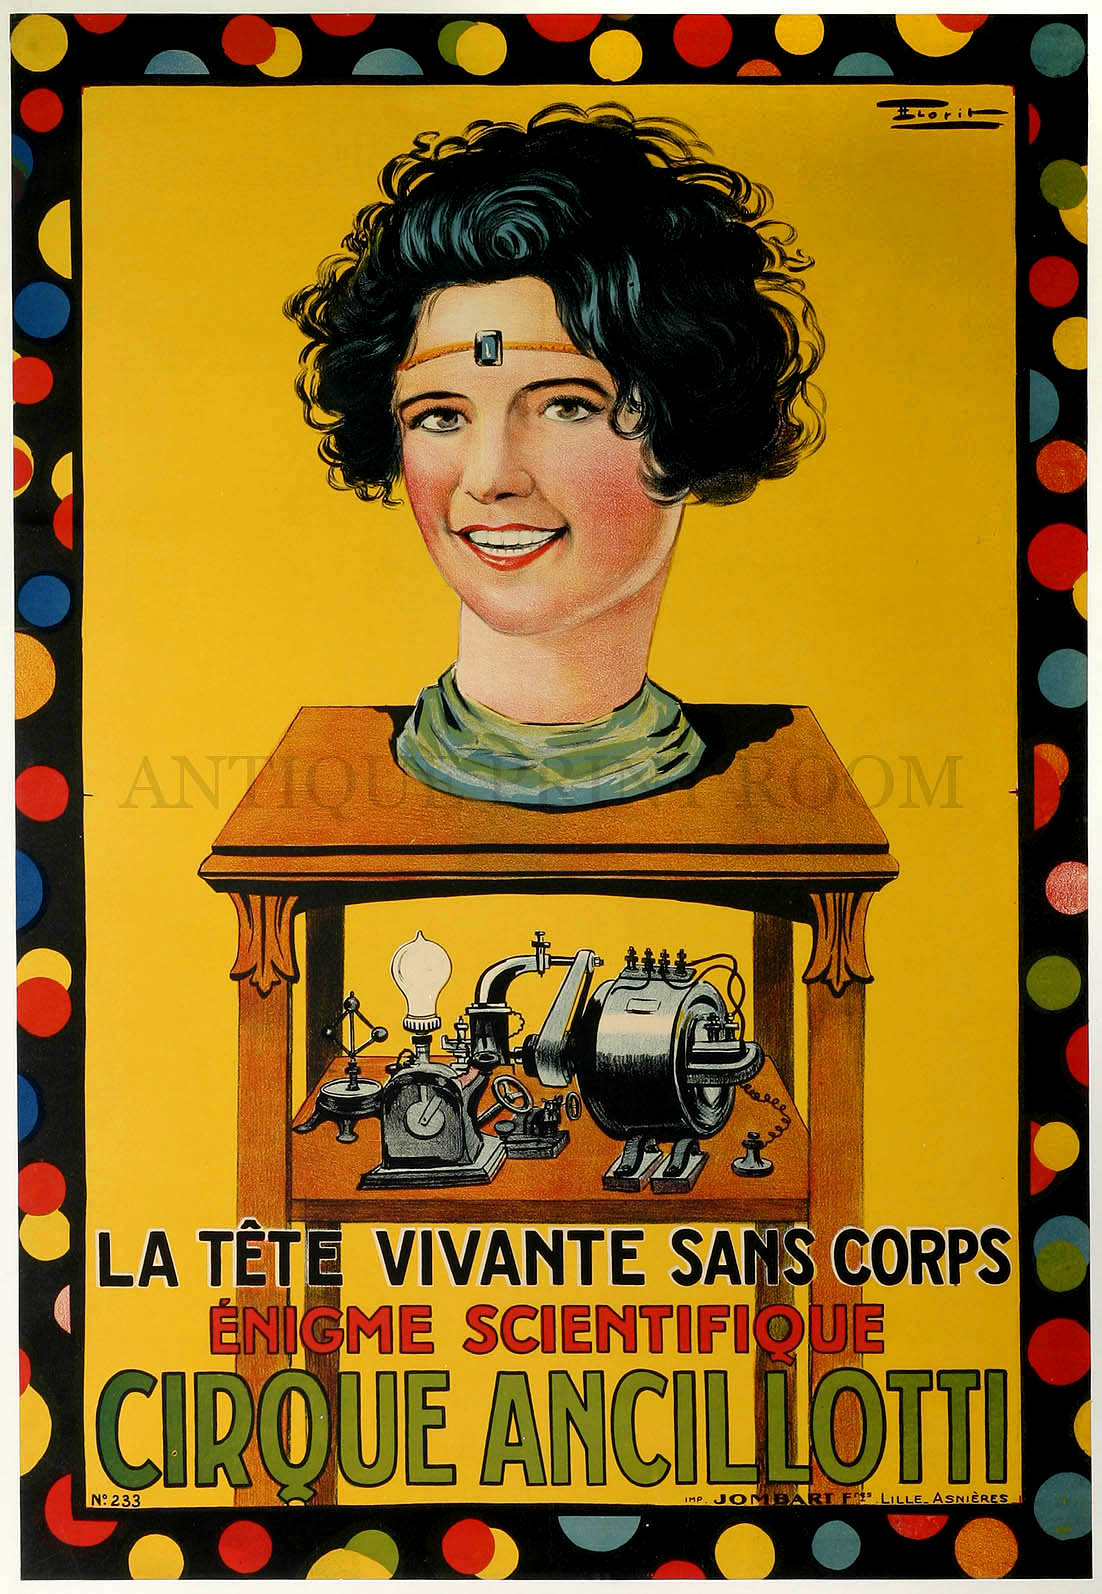 La tete vivante sans corps enigme scientifique circque ancillotti. - Antique Print from 1917